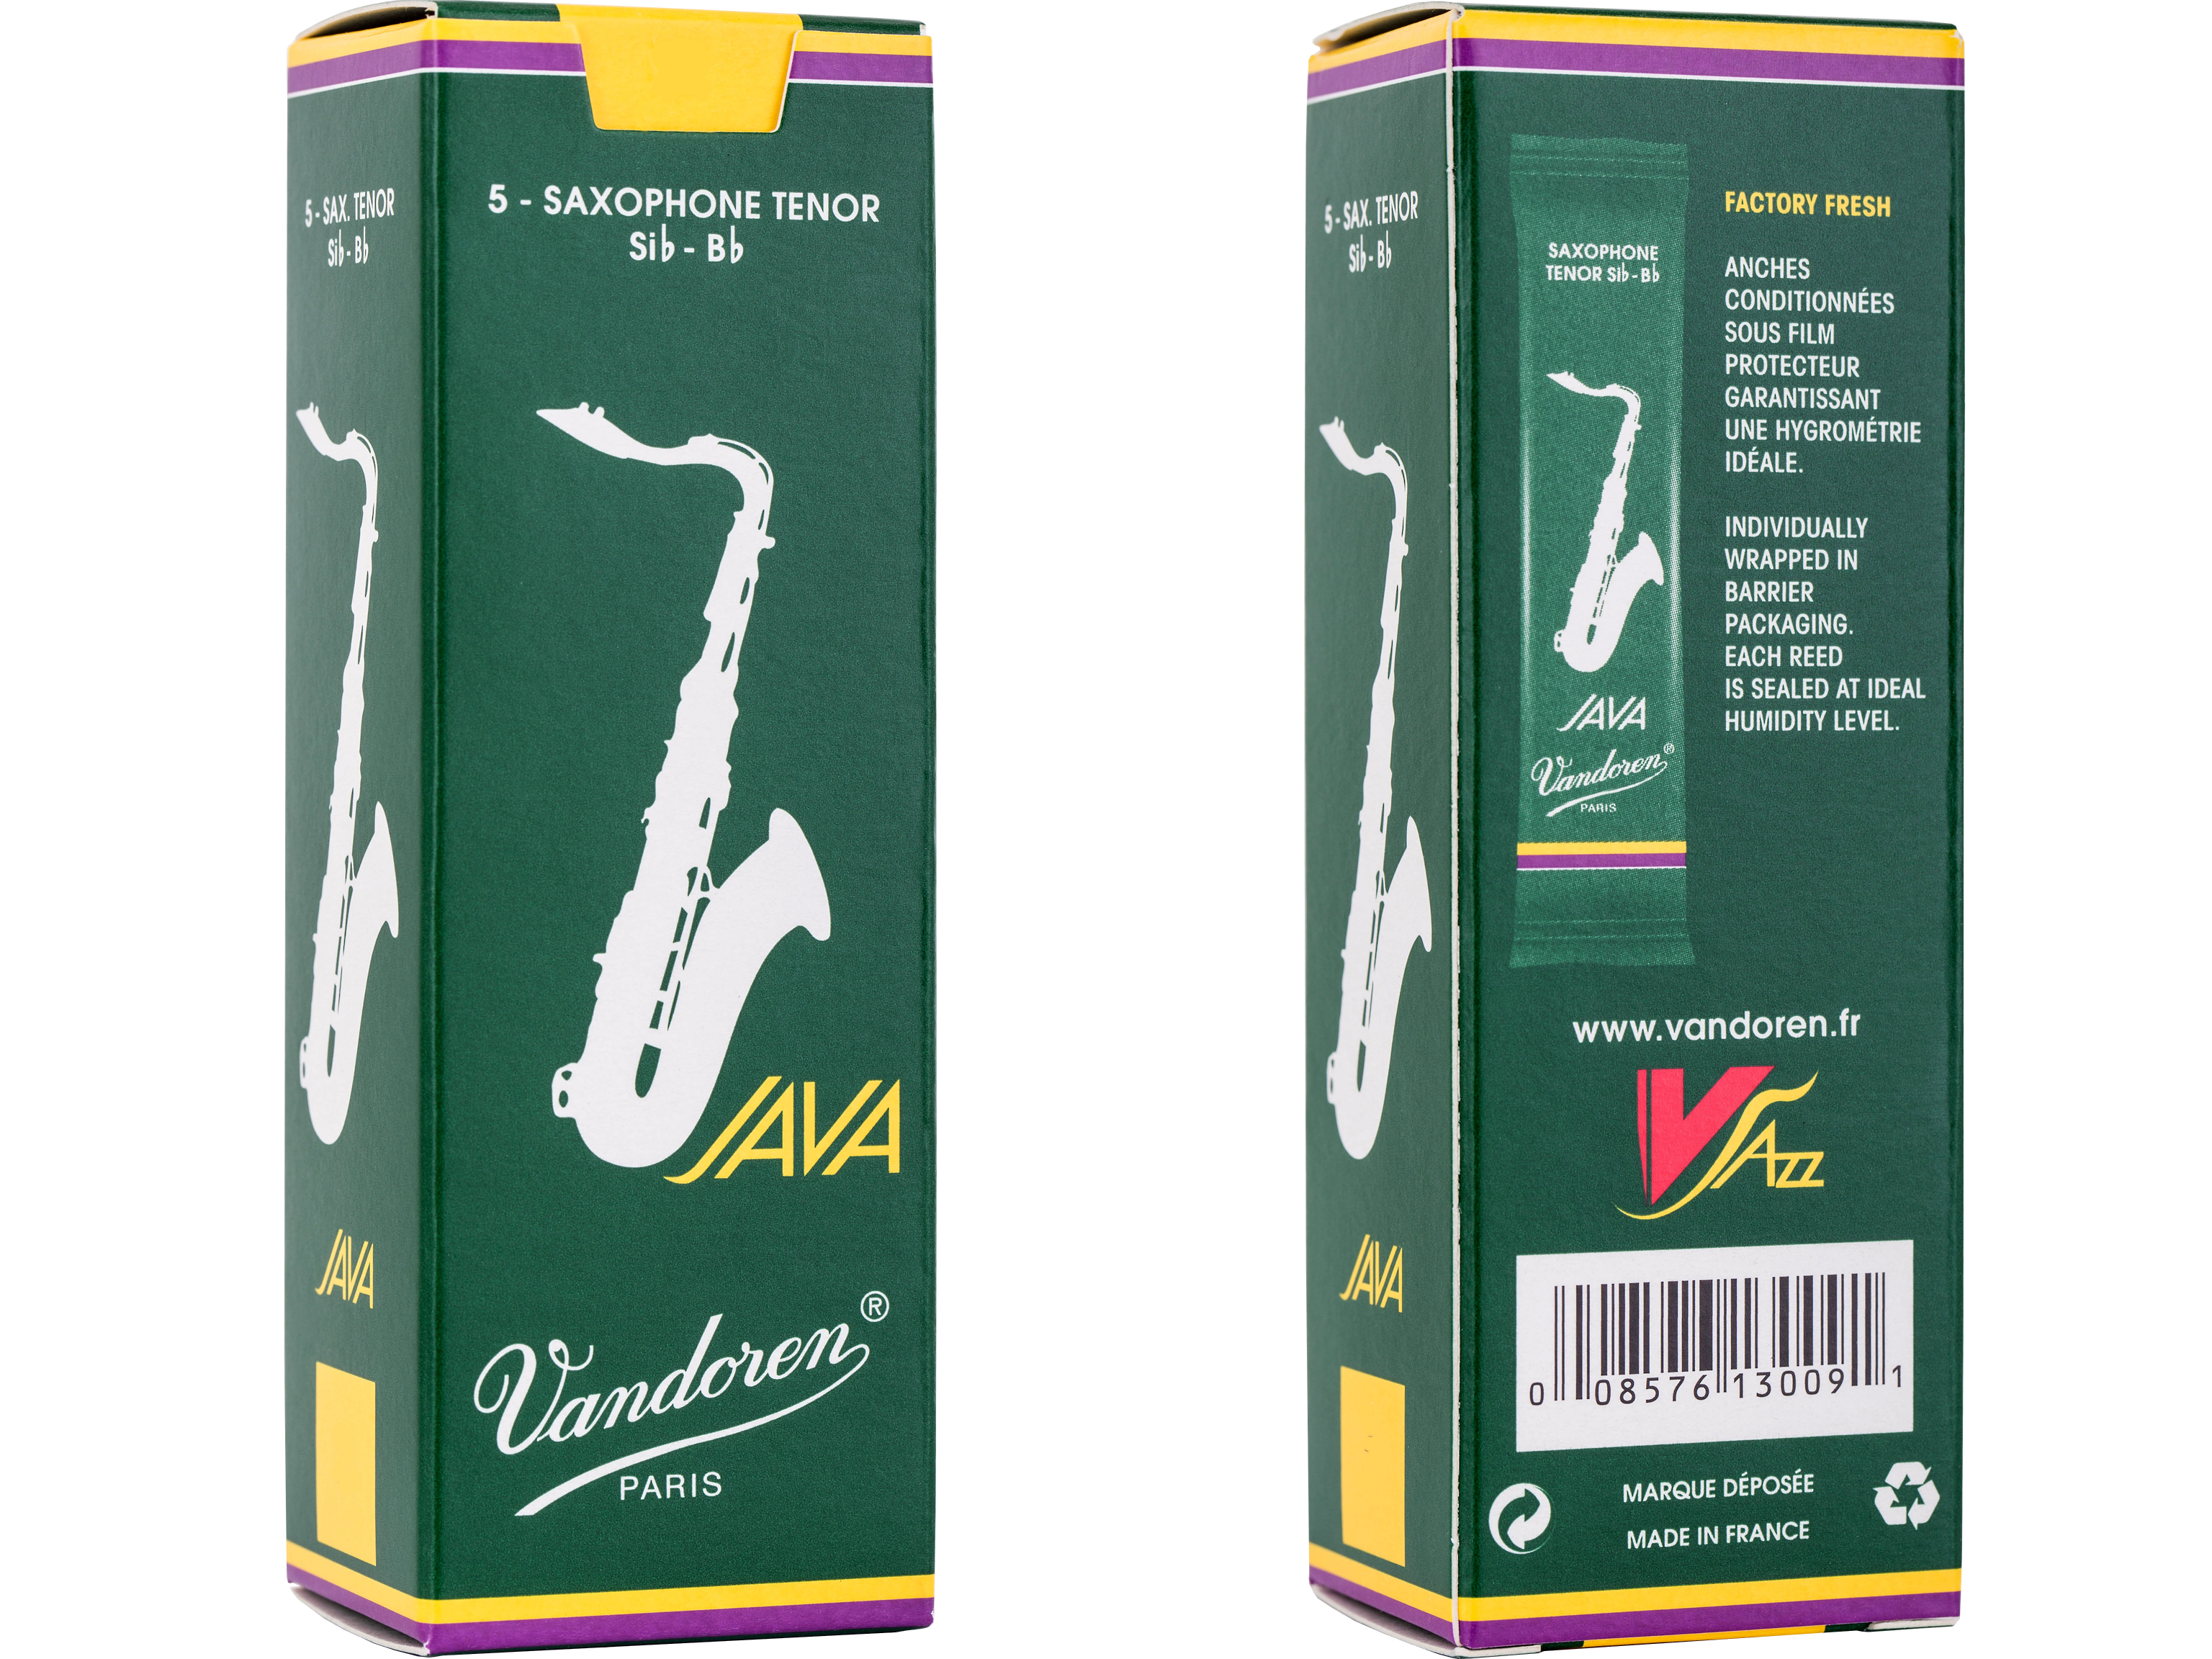 Vandoren Saxophonblatt Java Tenor 3,5